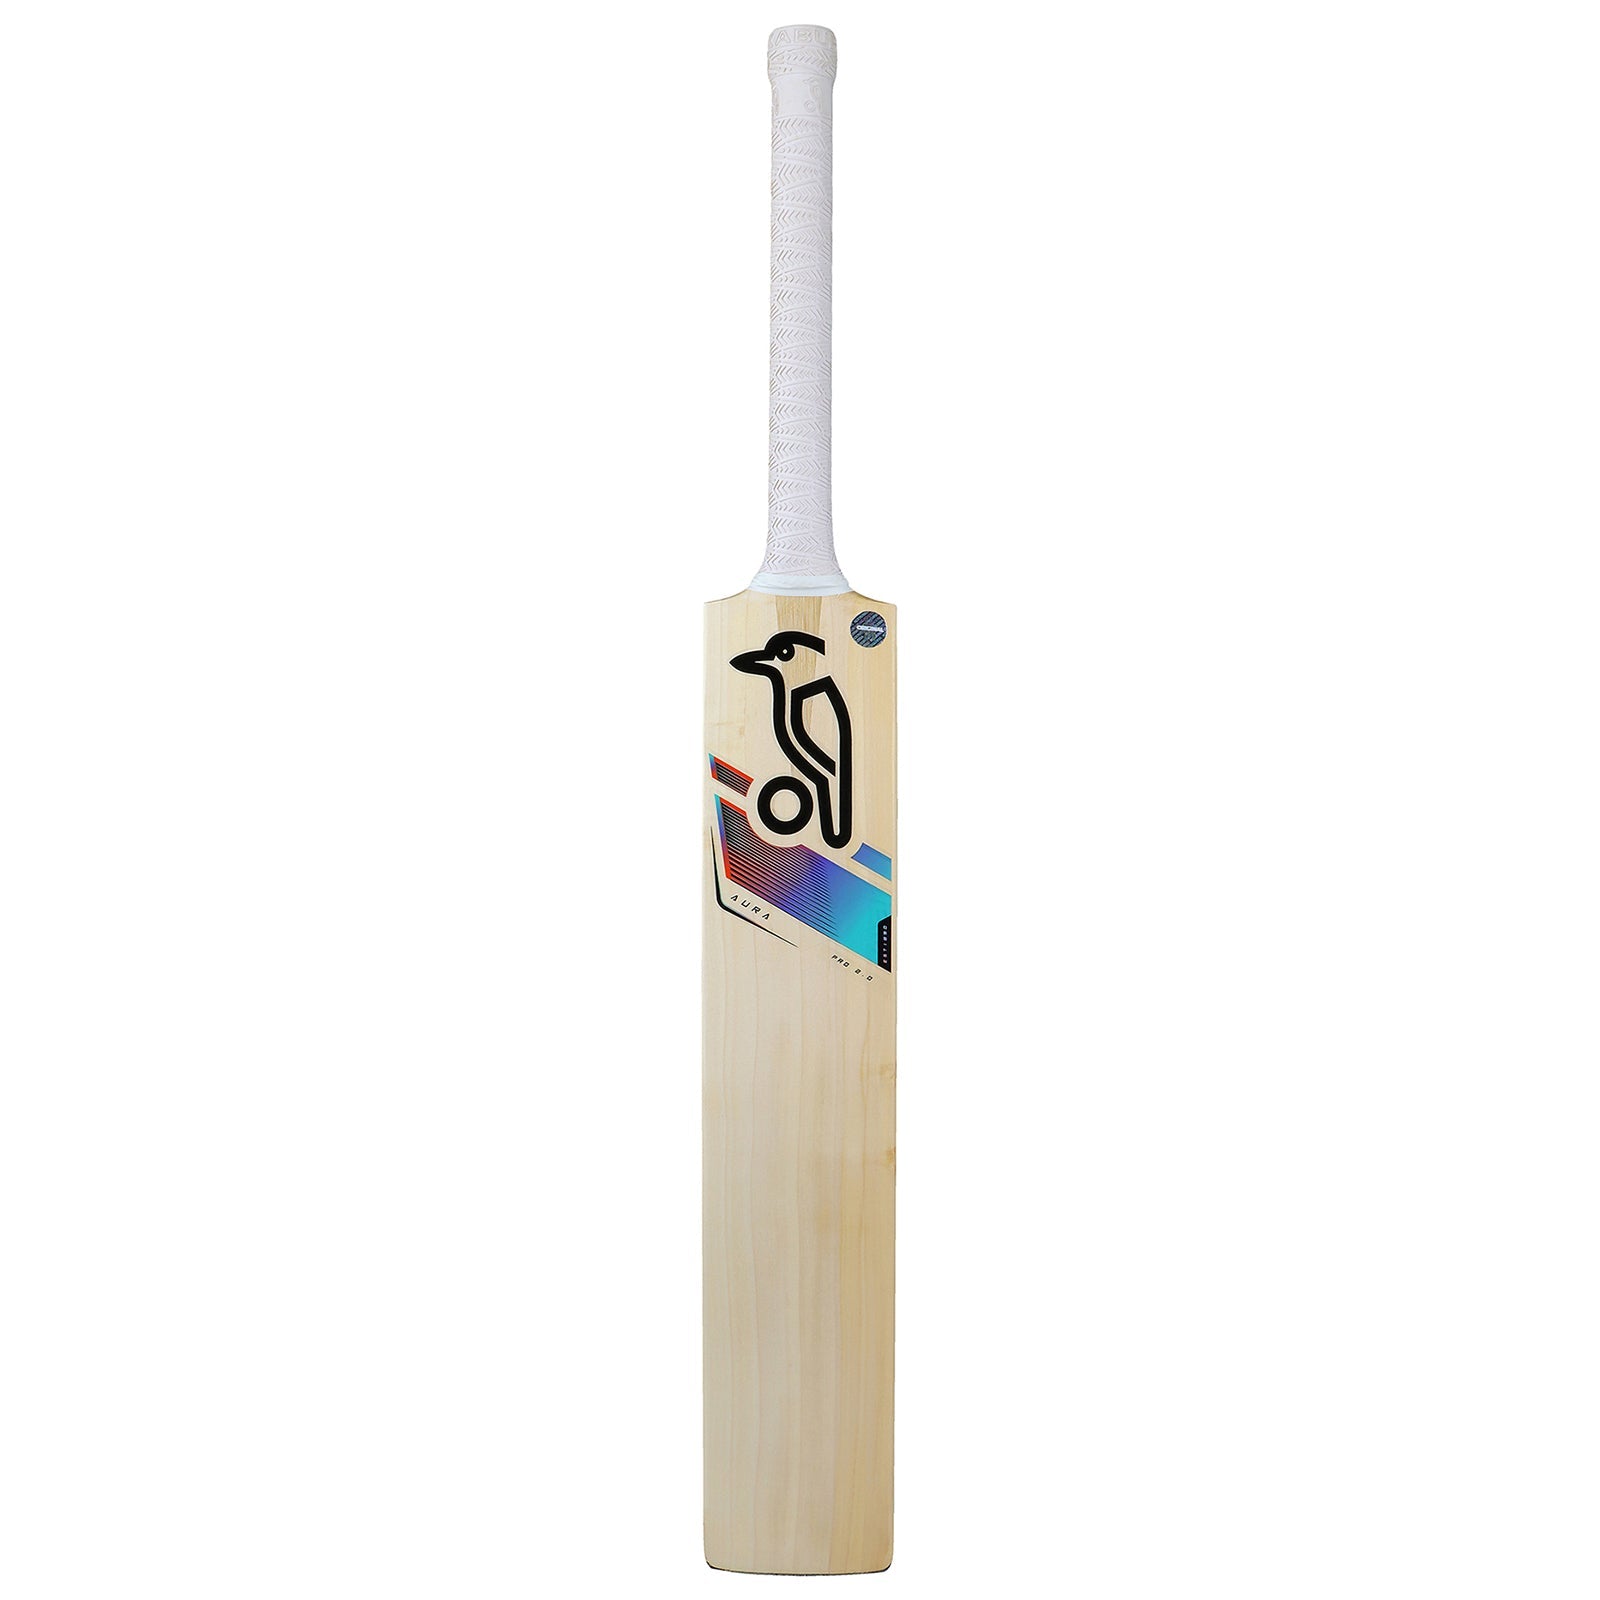 Kookaburra Aura Pro 2.0 Cricket Bat - Size 6